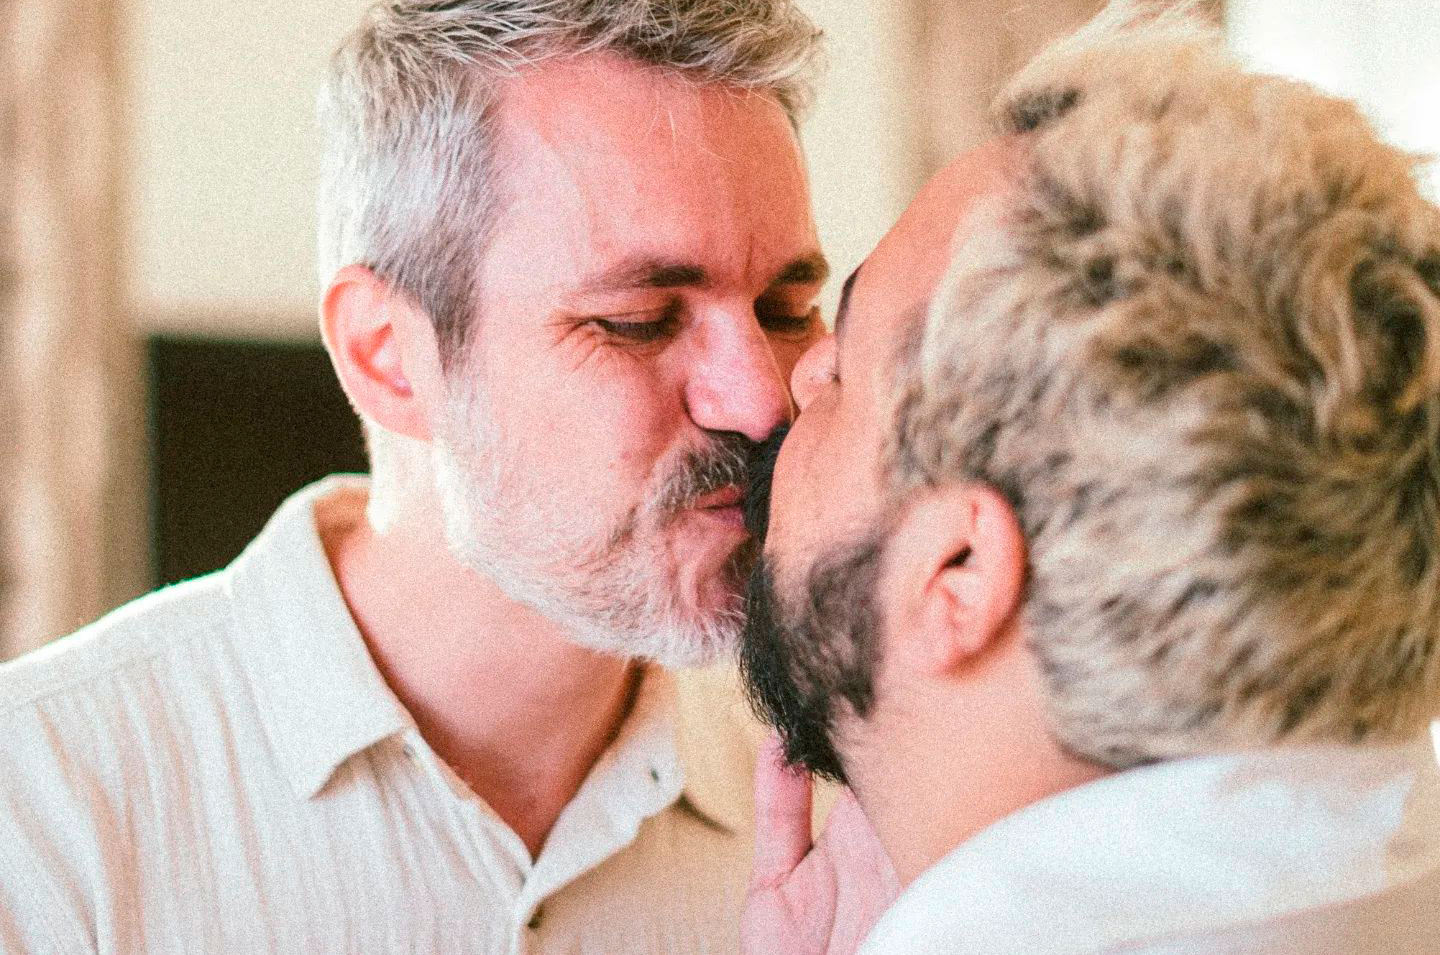 Luis Lobianco e Lúcio Zandonadi se beijam após o sim no casamento. Foto: Alexandre Woloch